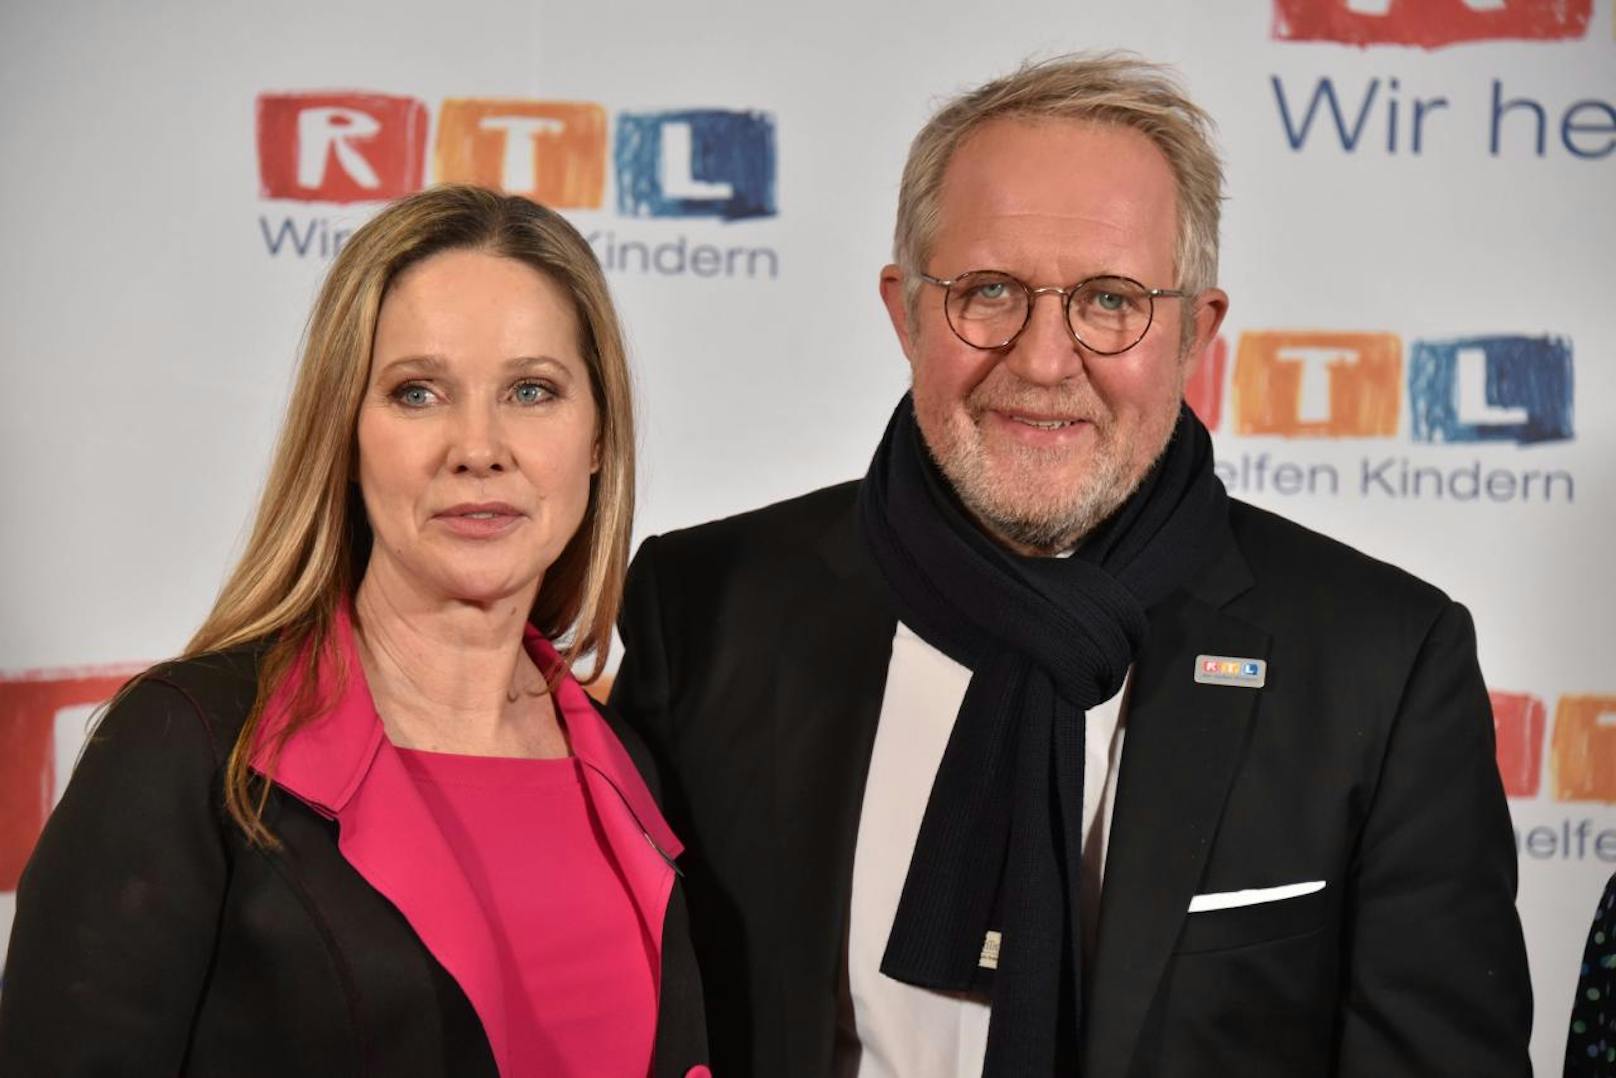 Schauspieler Harald Krassnitzer und Ann-Kathrin Kramer posieren am 22.11.2018 in Hürth bei Köln beim 23. RTL Spendenmarathon "Wir helfen Kindern" 2018.